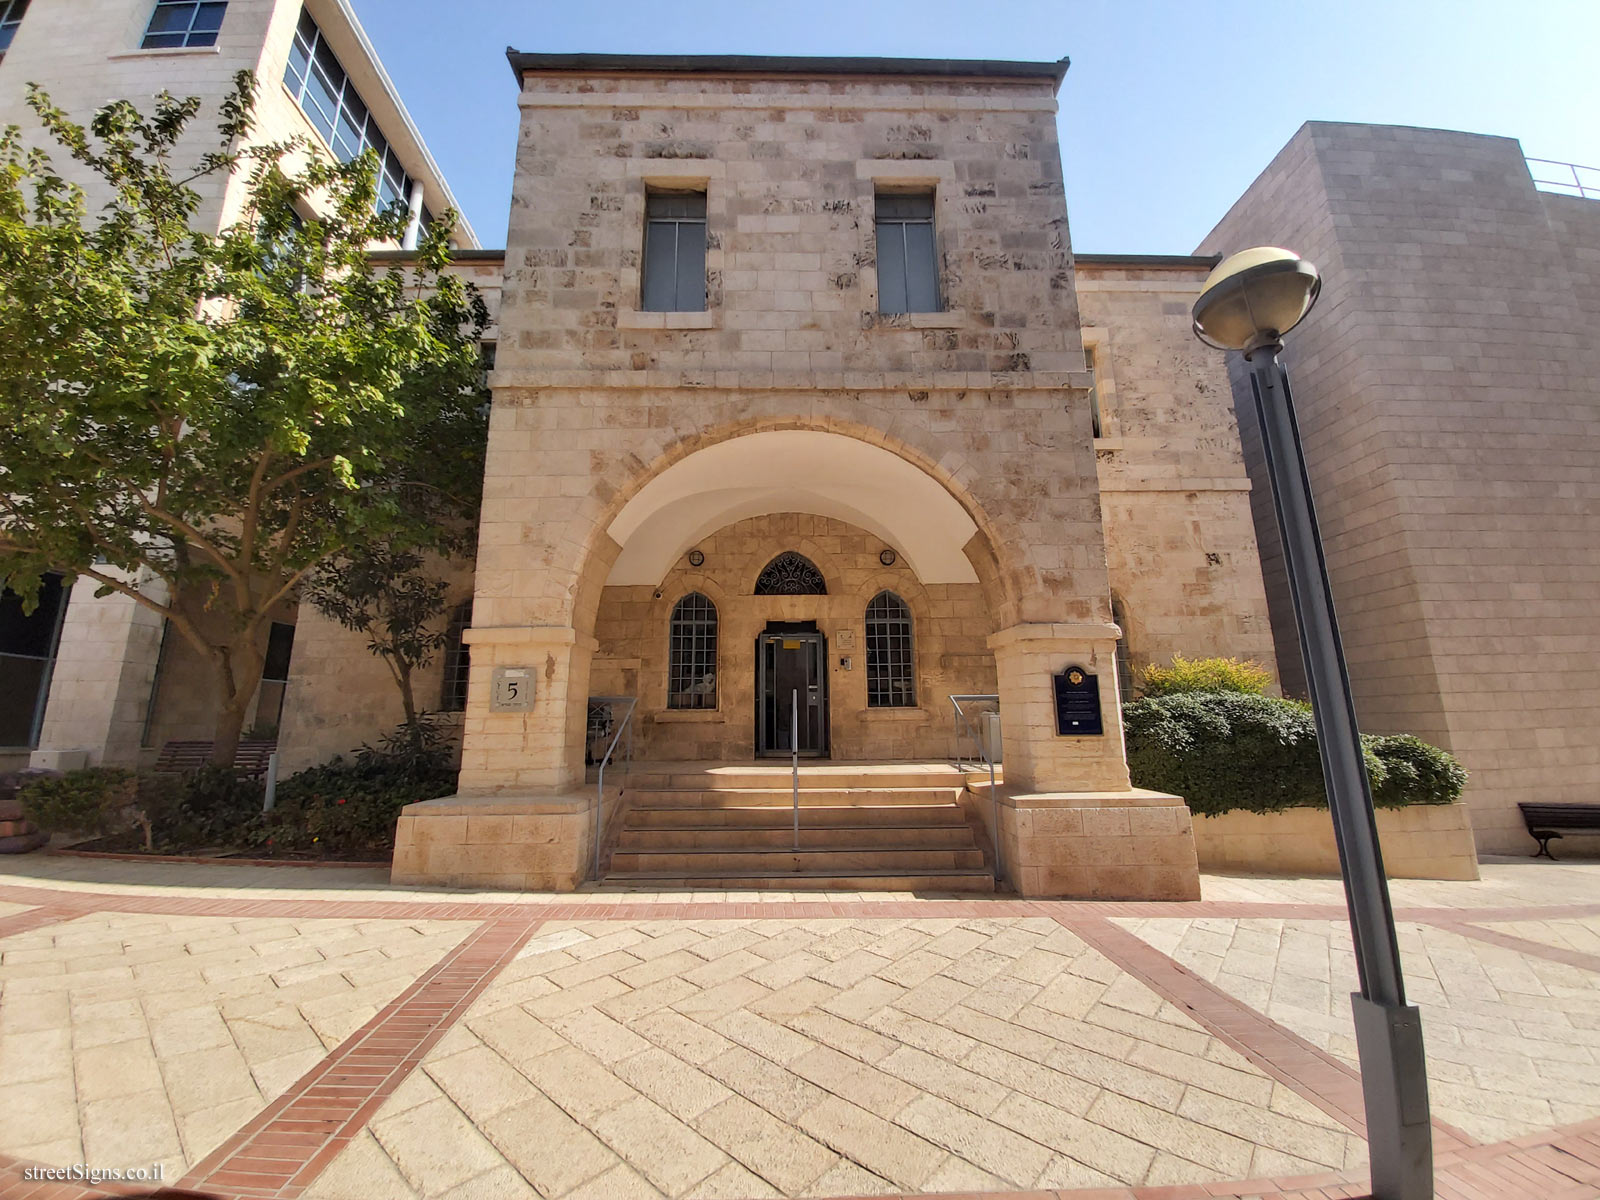 Jerusalem - The Built Heritage - Rear Building of Darouti Hotel - Safra Square 5, Jerusalem